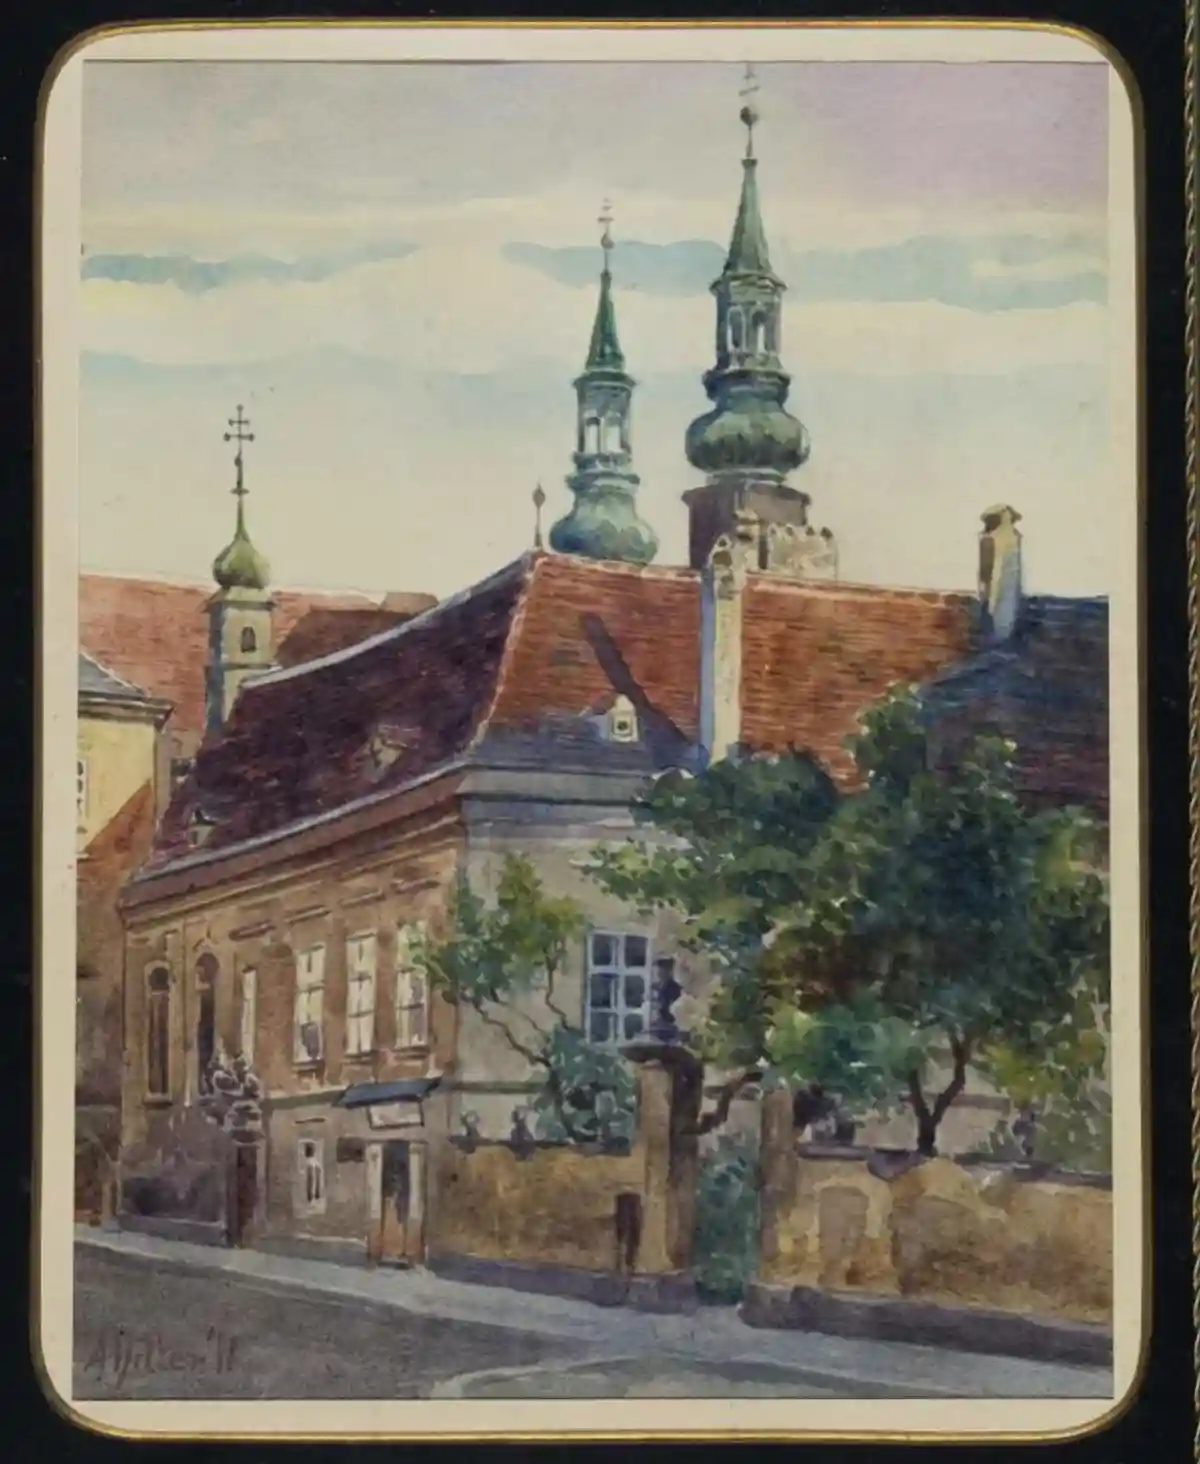 Картина, написанная Адольфом Гитлером продана за 32 500$. Фото: Alexander Historical Auctions